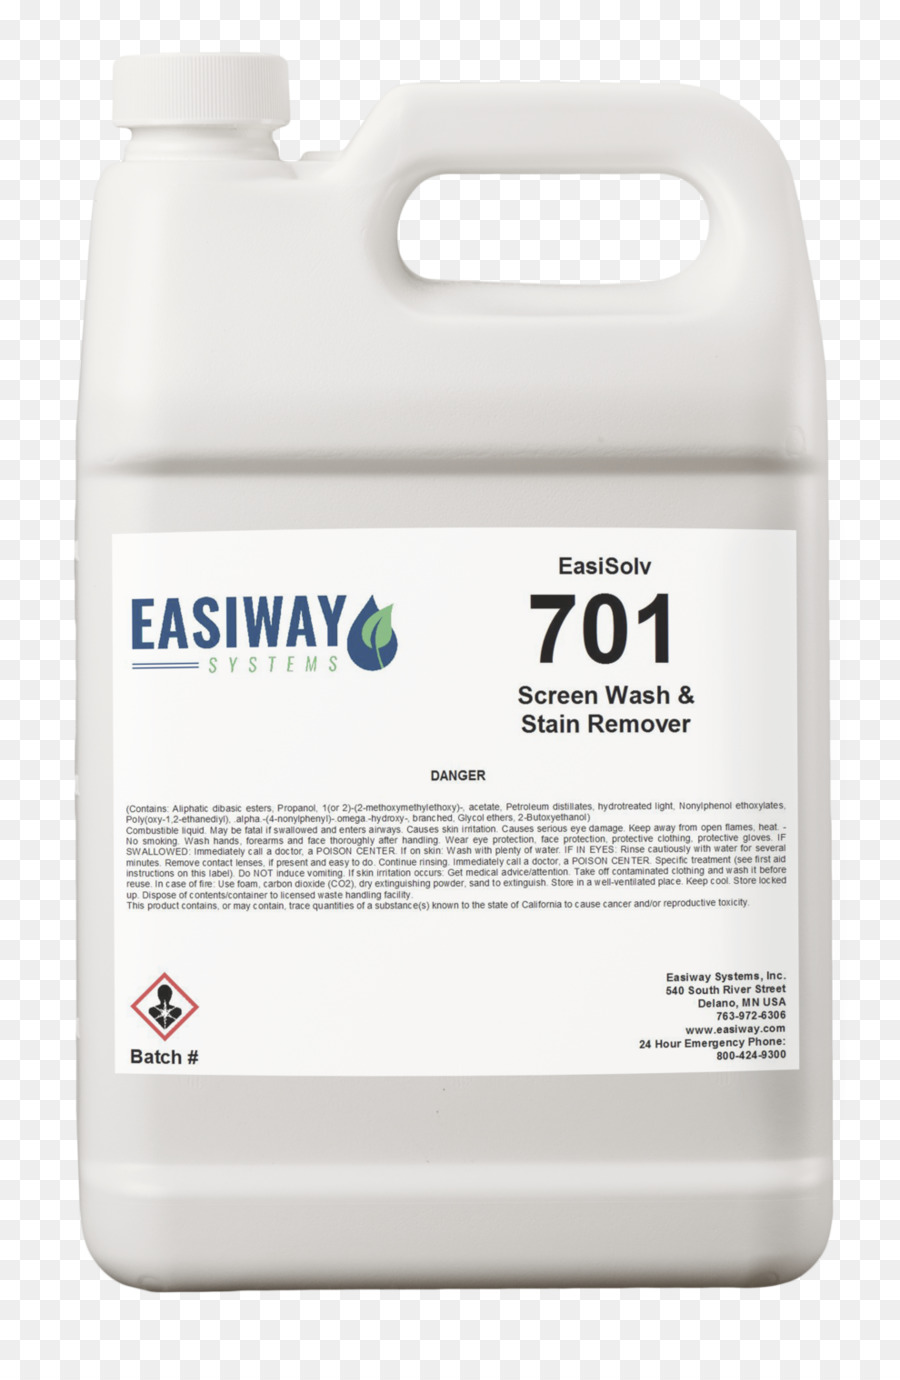 Easiway Systems, Inc Waschen Fahrzeug-Bildschirm Waschen Printing press-Plastisol - Wasch tank